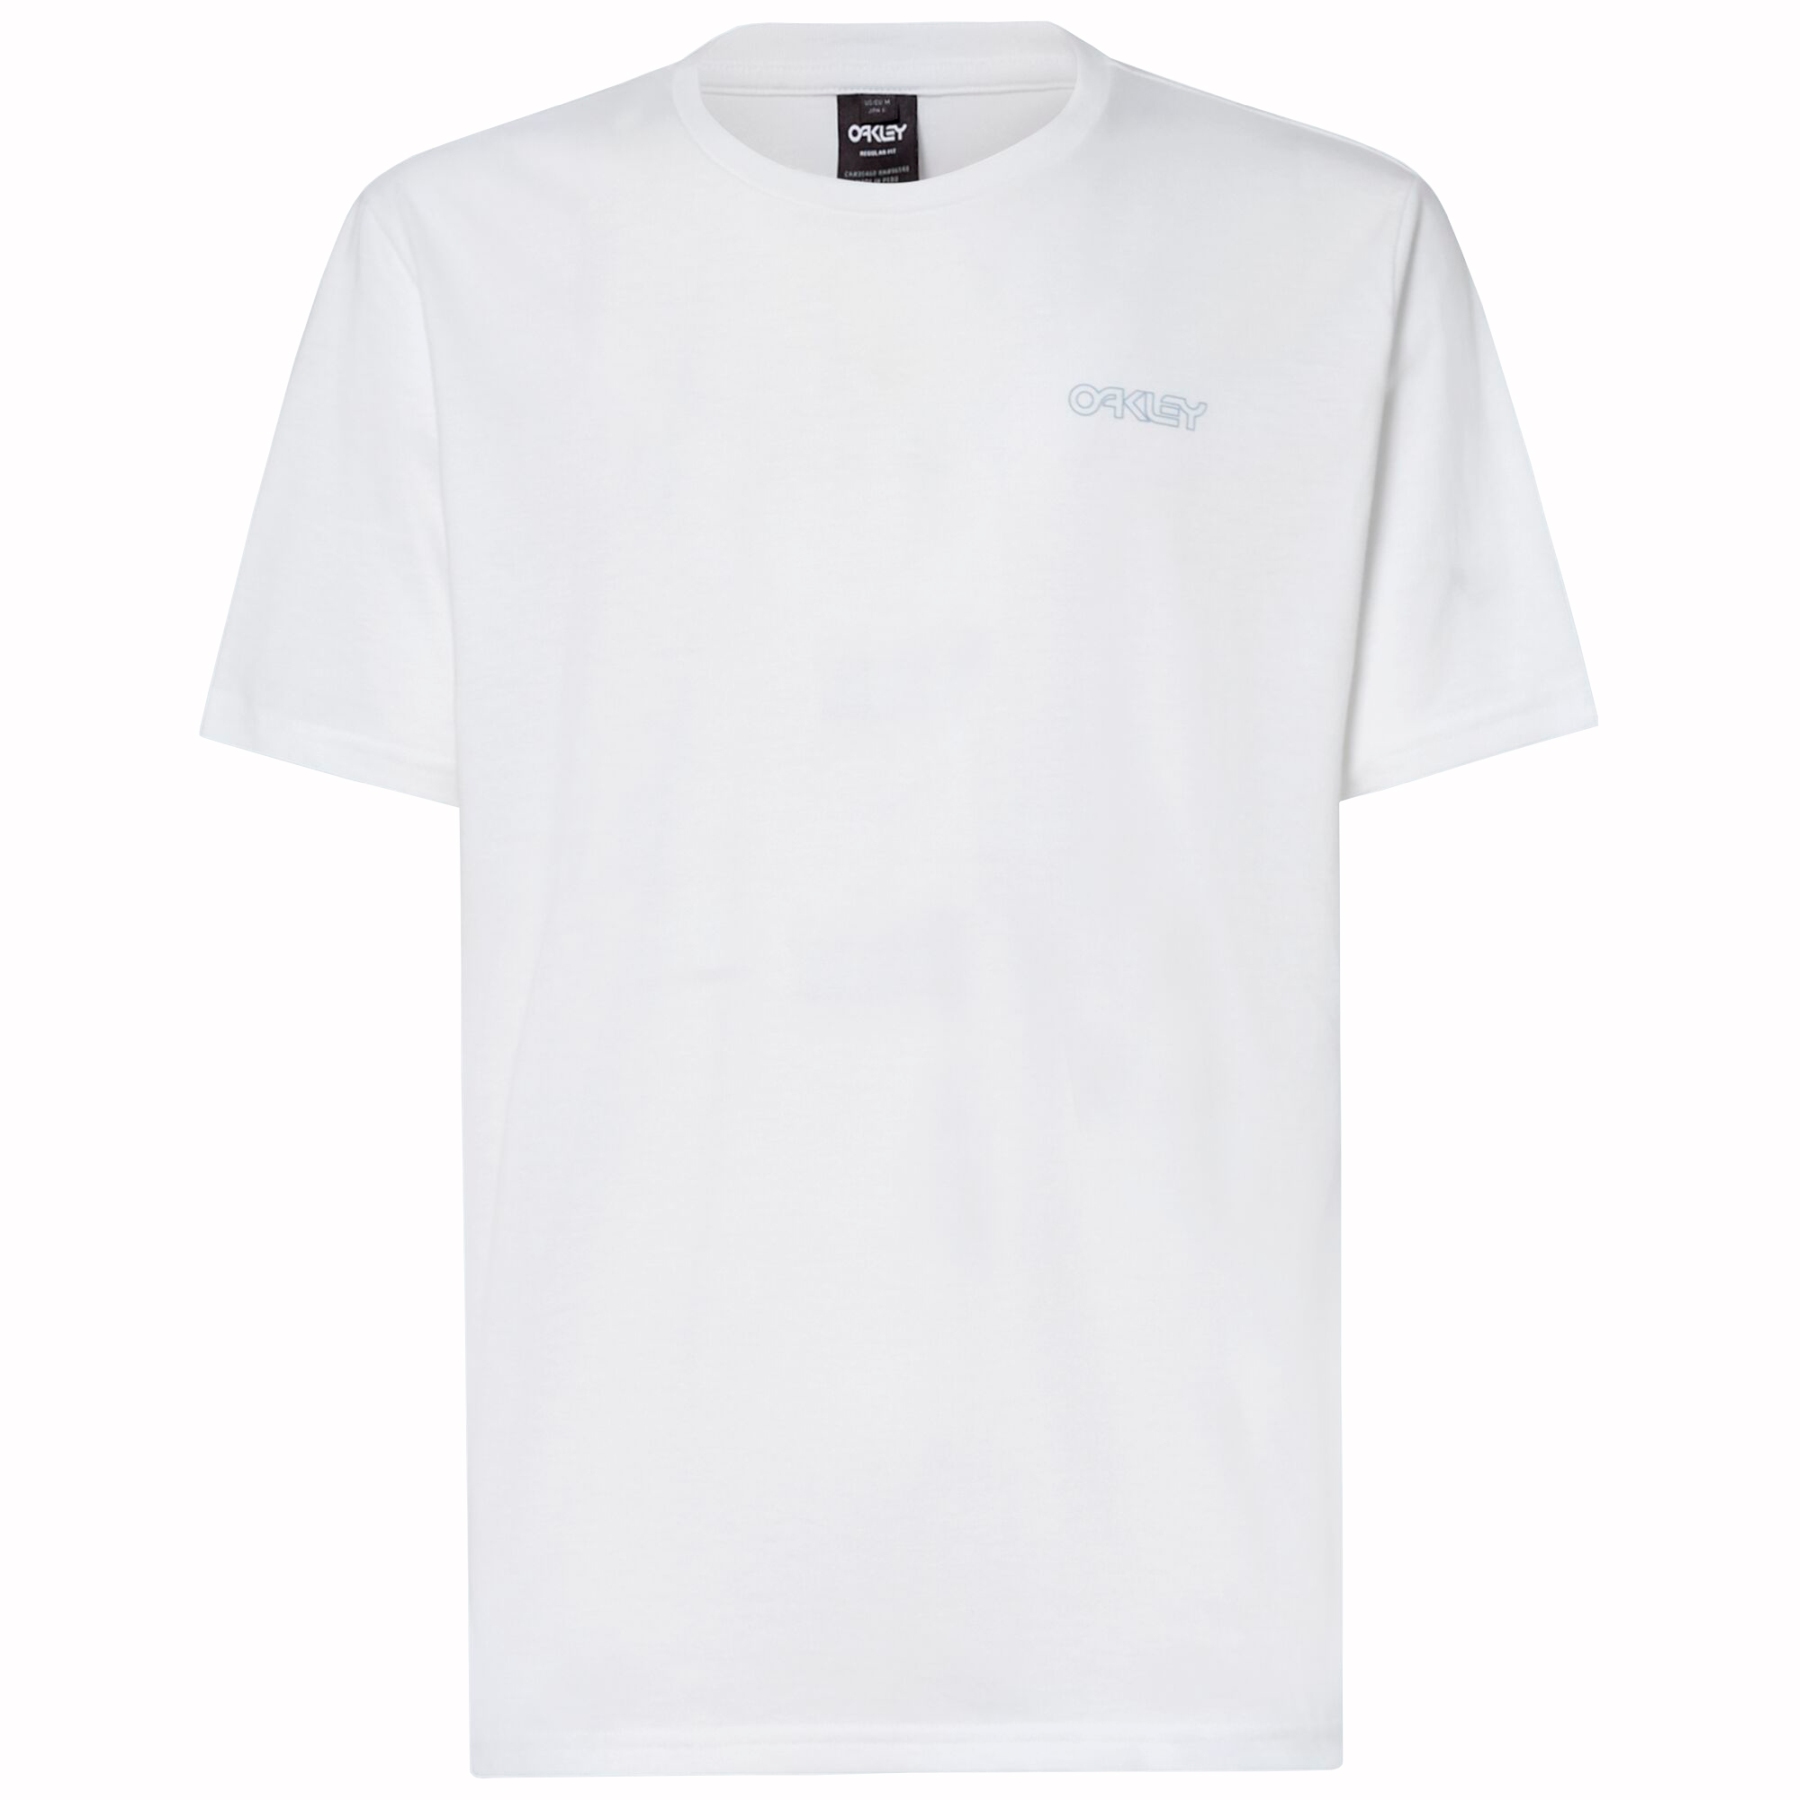 Produktbild von Oakley Jellyfish B1B RC T-Shirt - Weiß